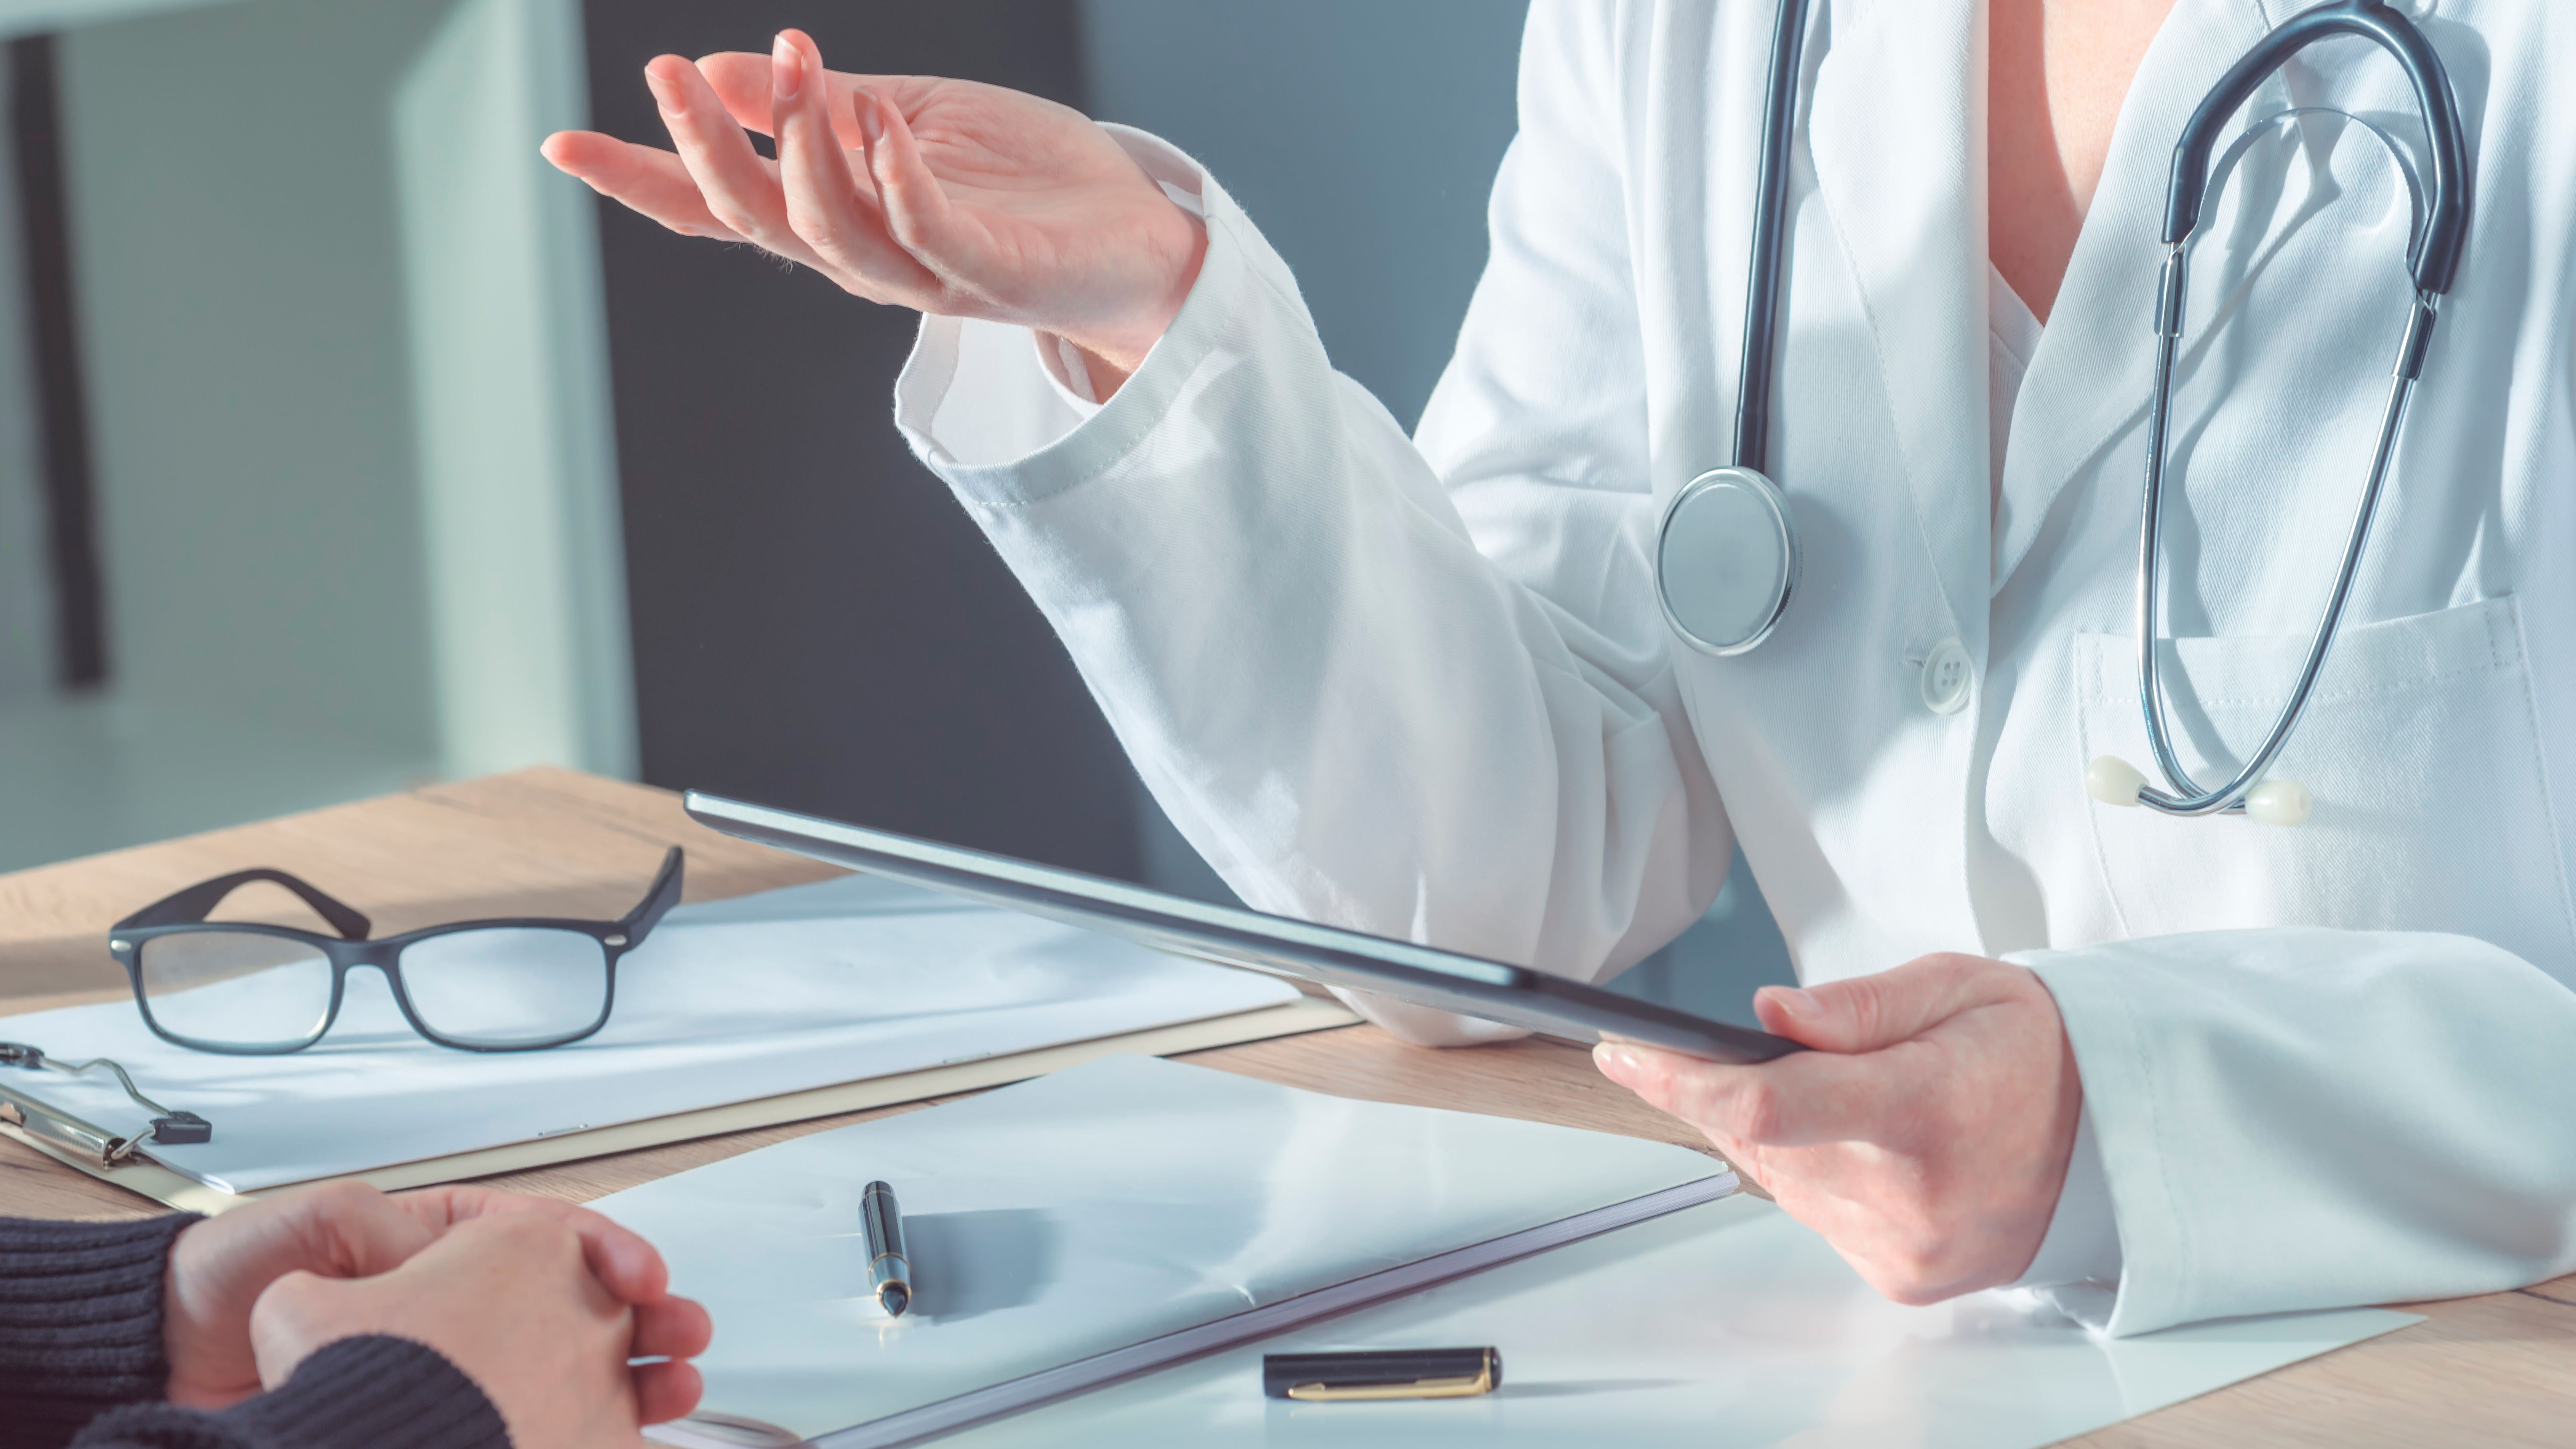 26 sociedades médicas se unieron para desarrollar un documento que resalta el riesgo que implica su desatención (Shutterstock)